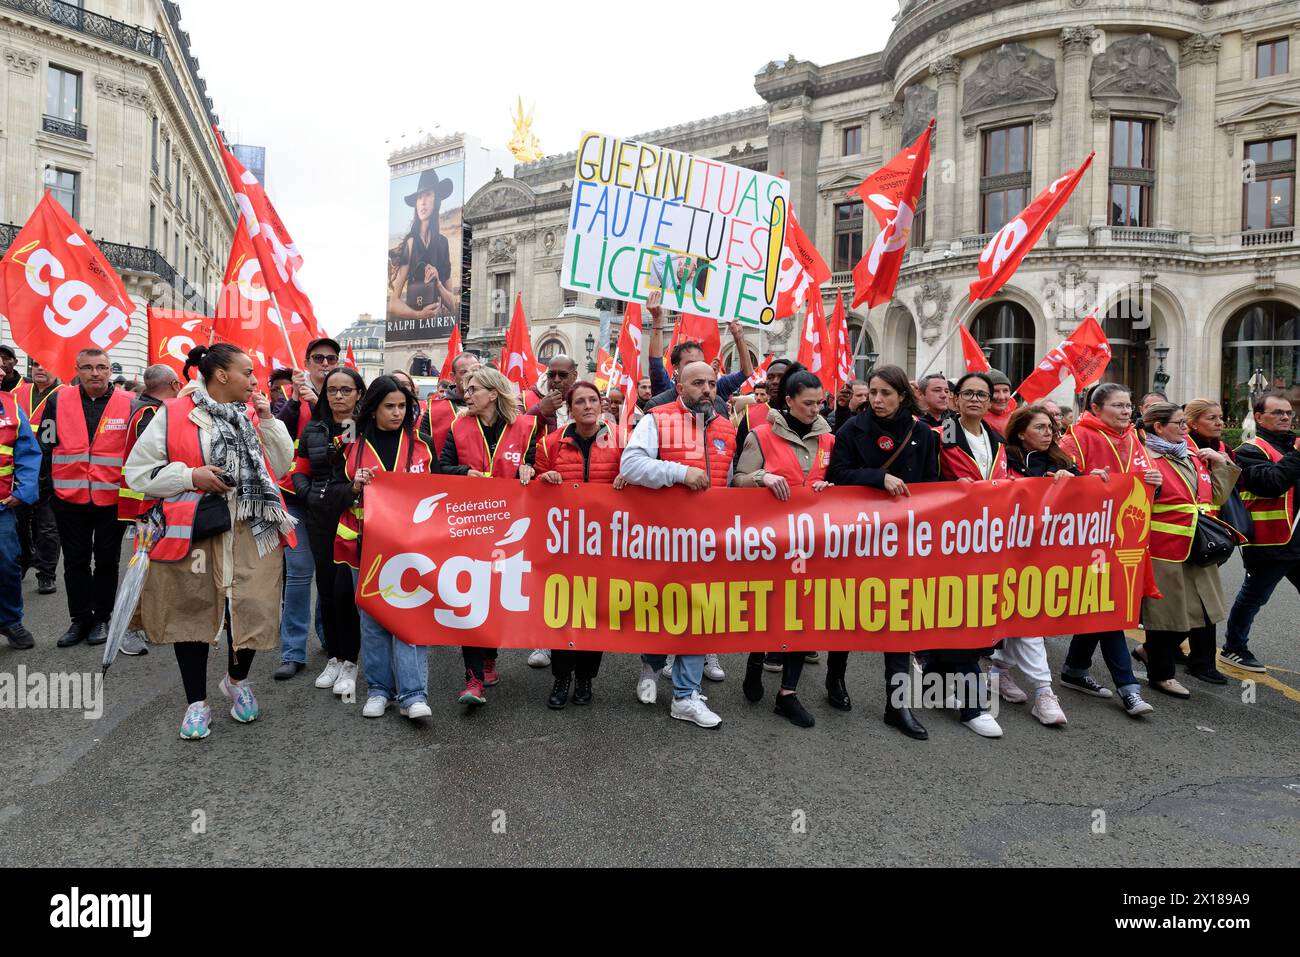 Les salariés du commerce défilent à Paris et promettent au ministre Guérini un incendie social s'ils n'obtiennent pas satisfaction lors des JO Stock Photo